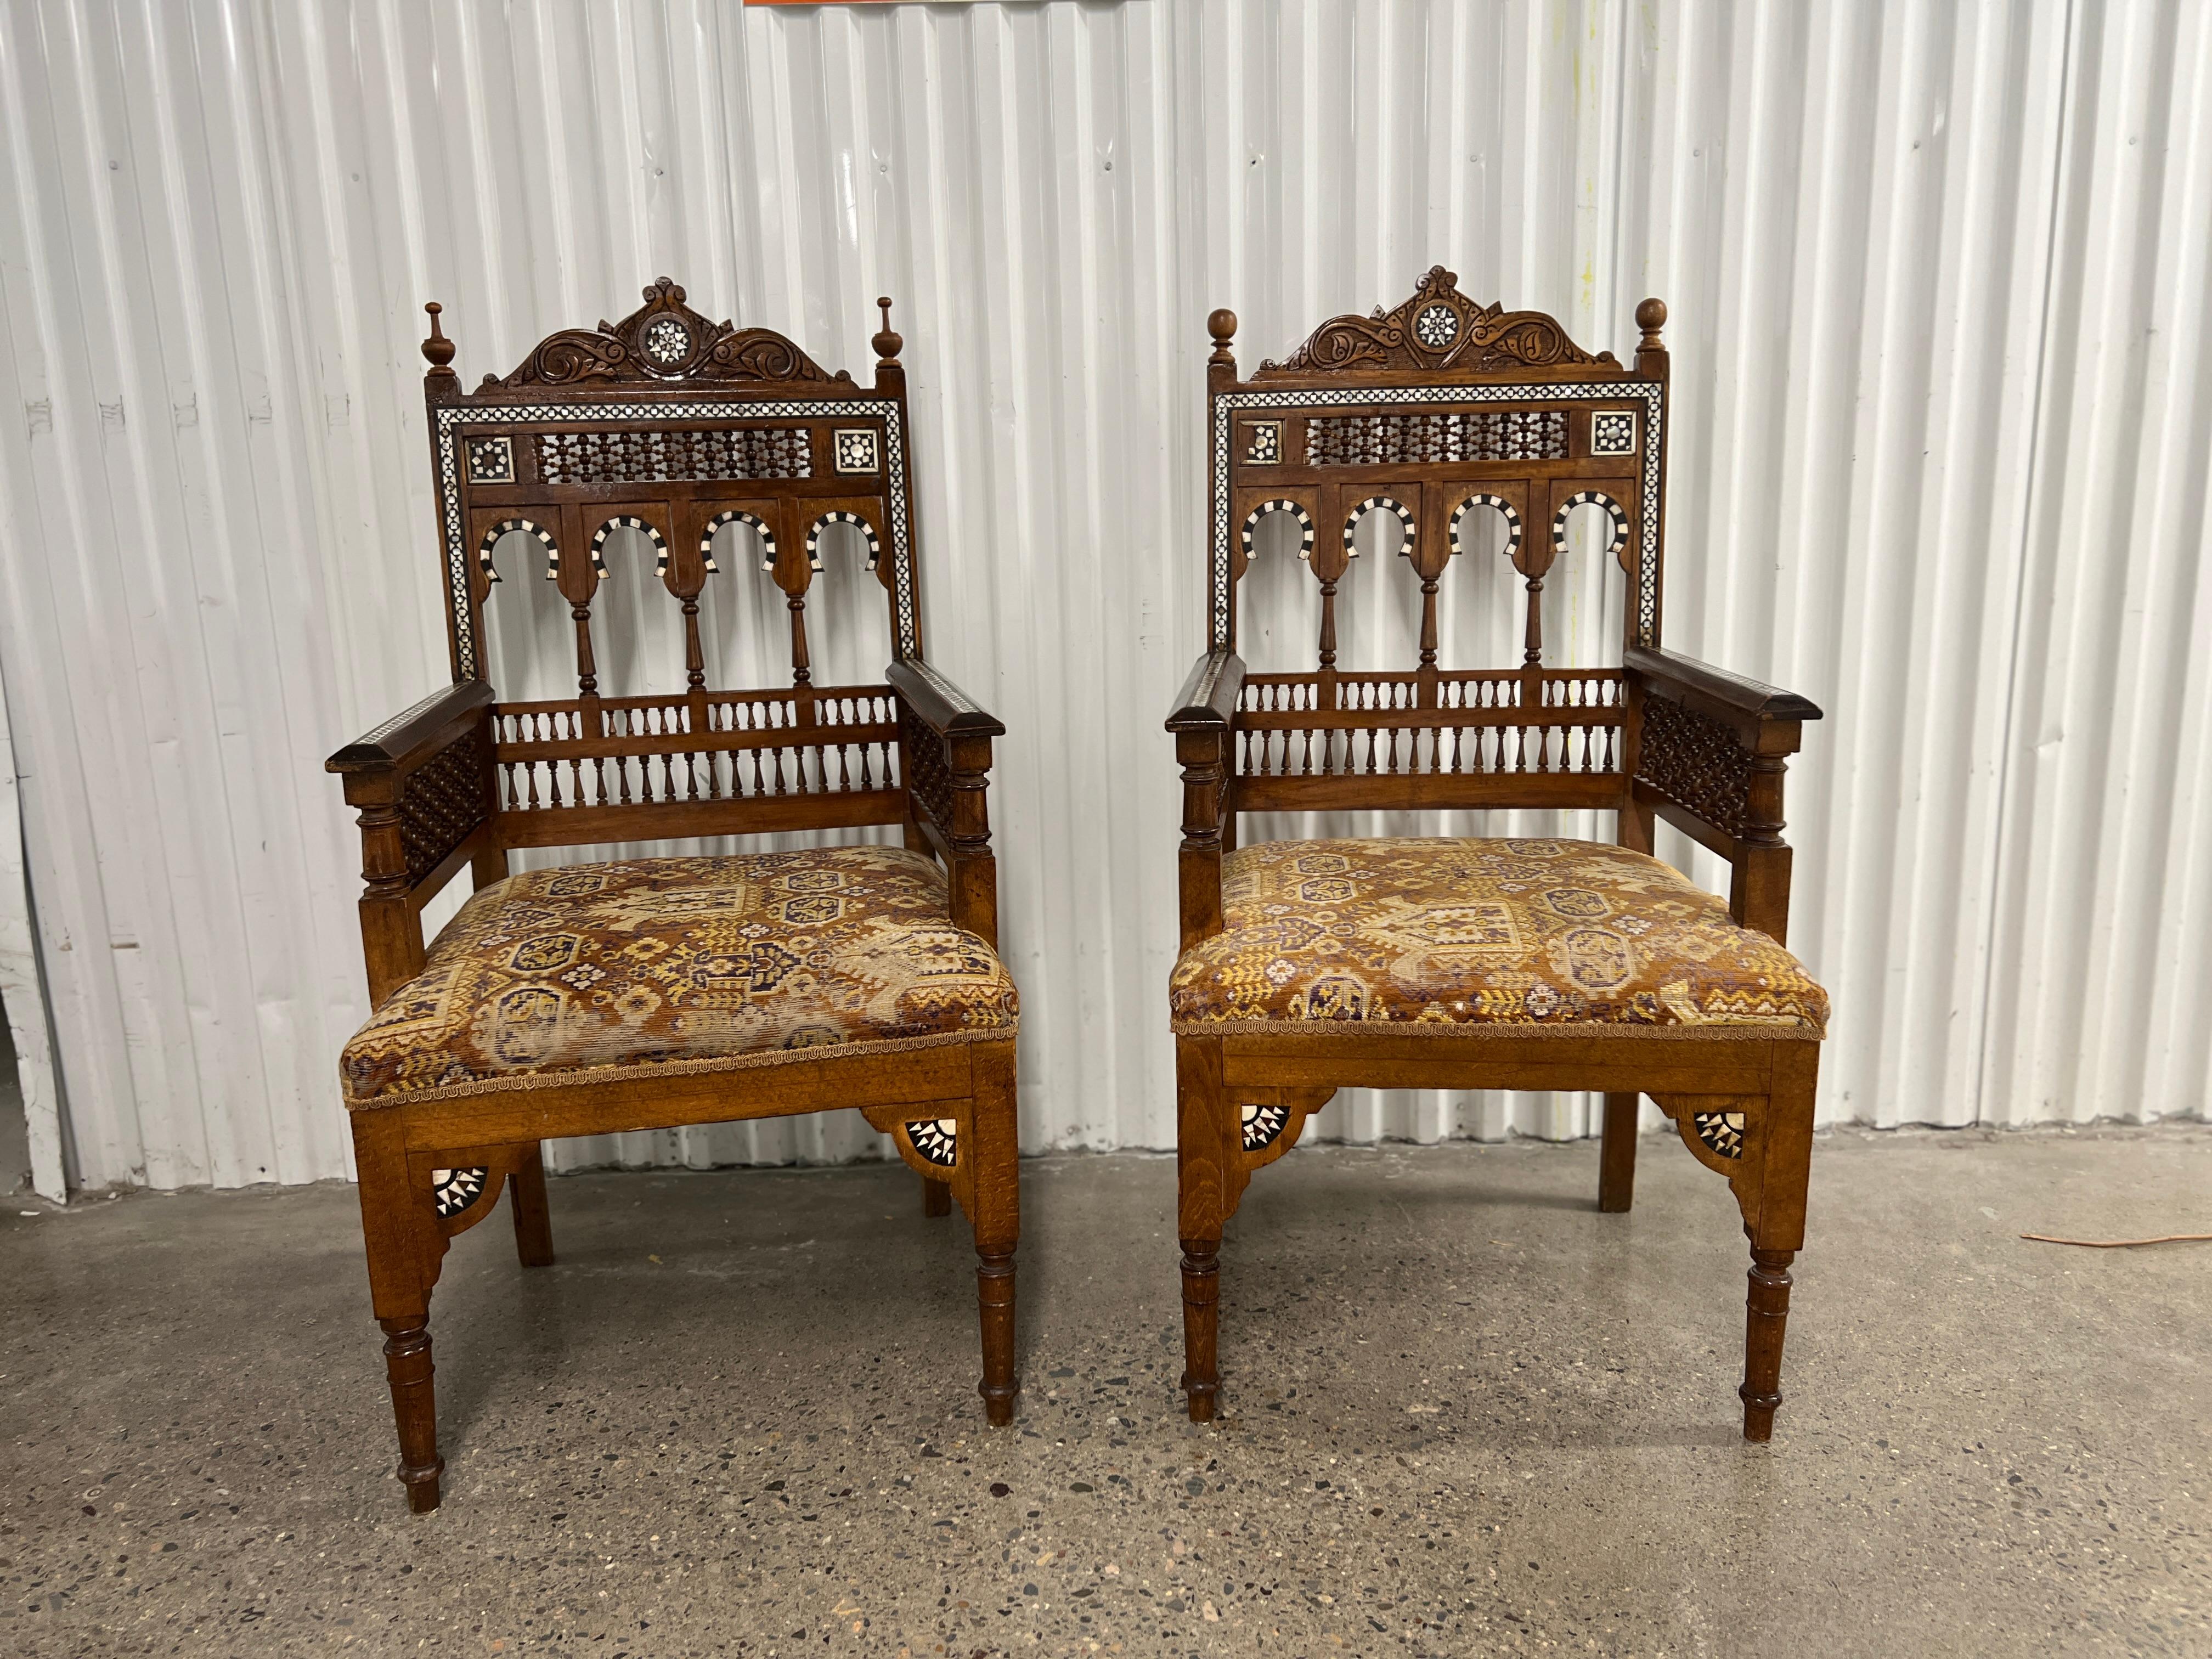 Syrienne ou égyptienne, vers 1900.

Impressionnant ensemble de meubles anciens de style Arabesque comprenant une paire de fauteuils et un canapé. 

Le canapé et les chaises de style mauresque ont probablement été fabriqués en Syrie ou dans un autre